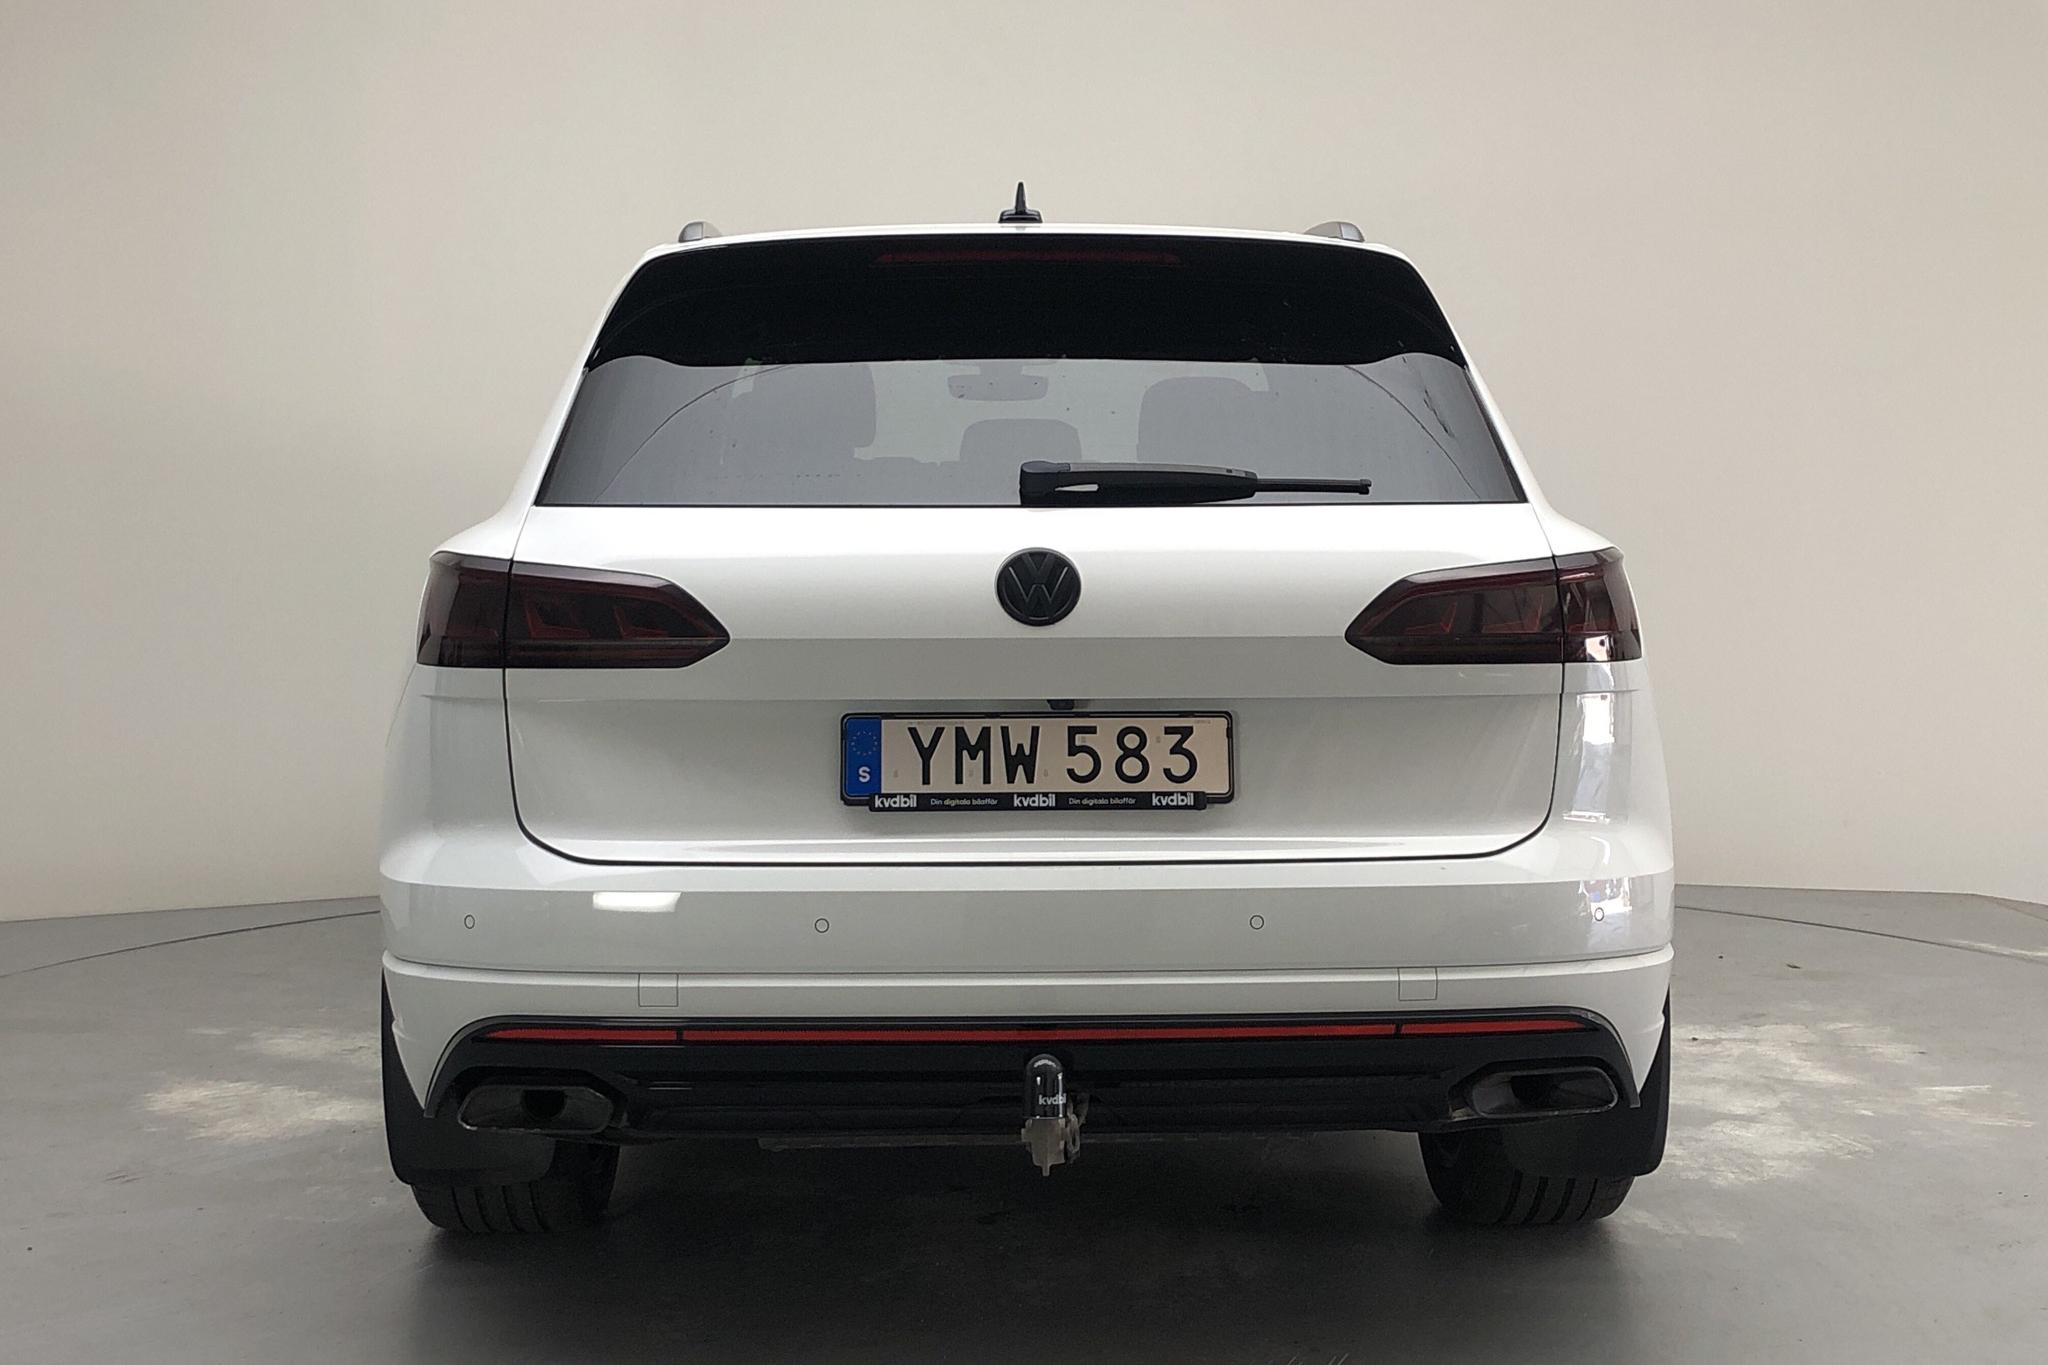 VW Touareg V6 TDI 4Motion (286hk) - 44 140 km - Automatic - white - 2018